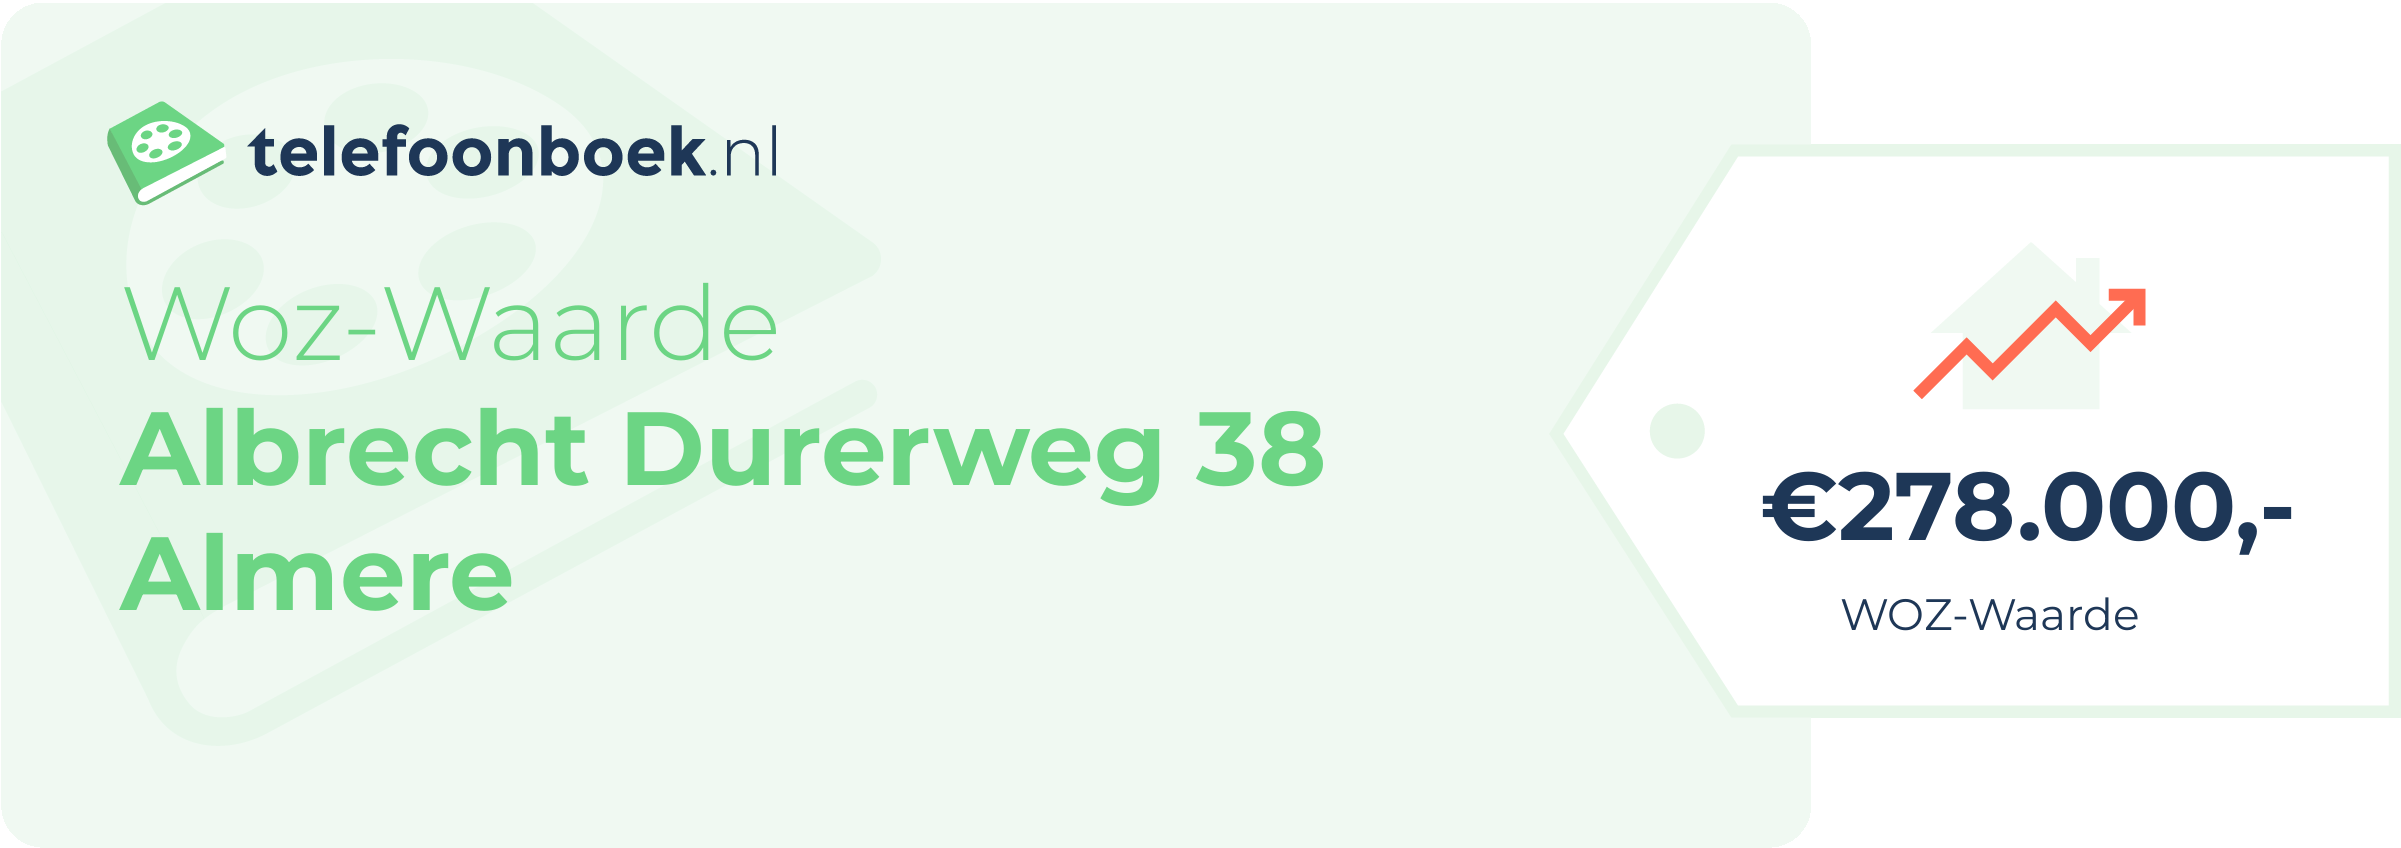 WOZ-waarde Albrecht Durerweg 38 Almere